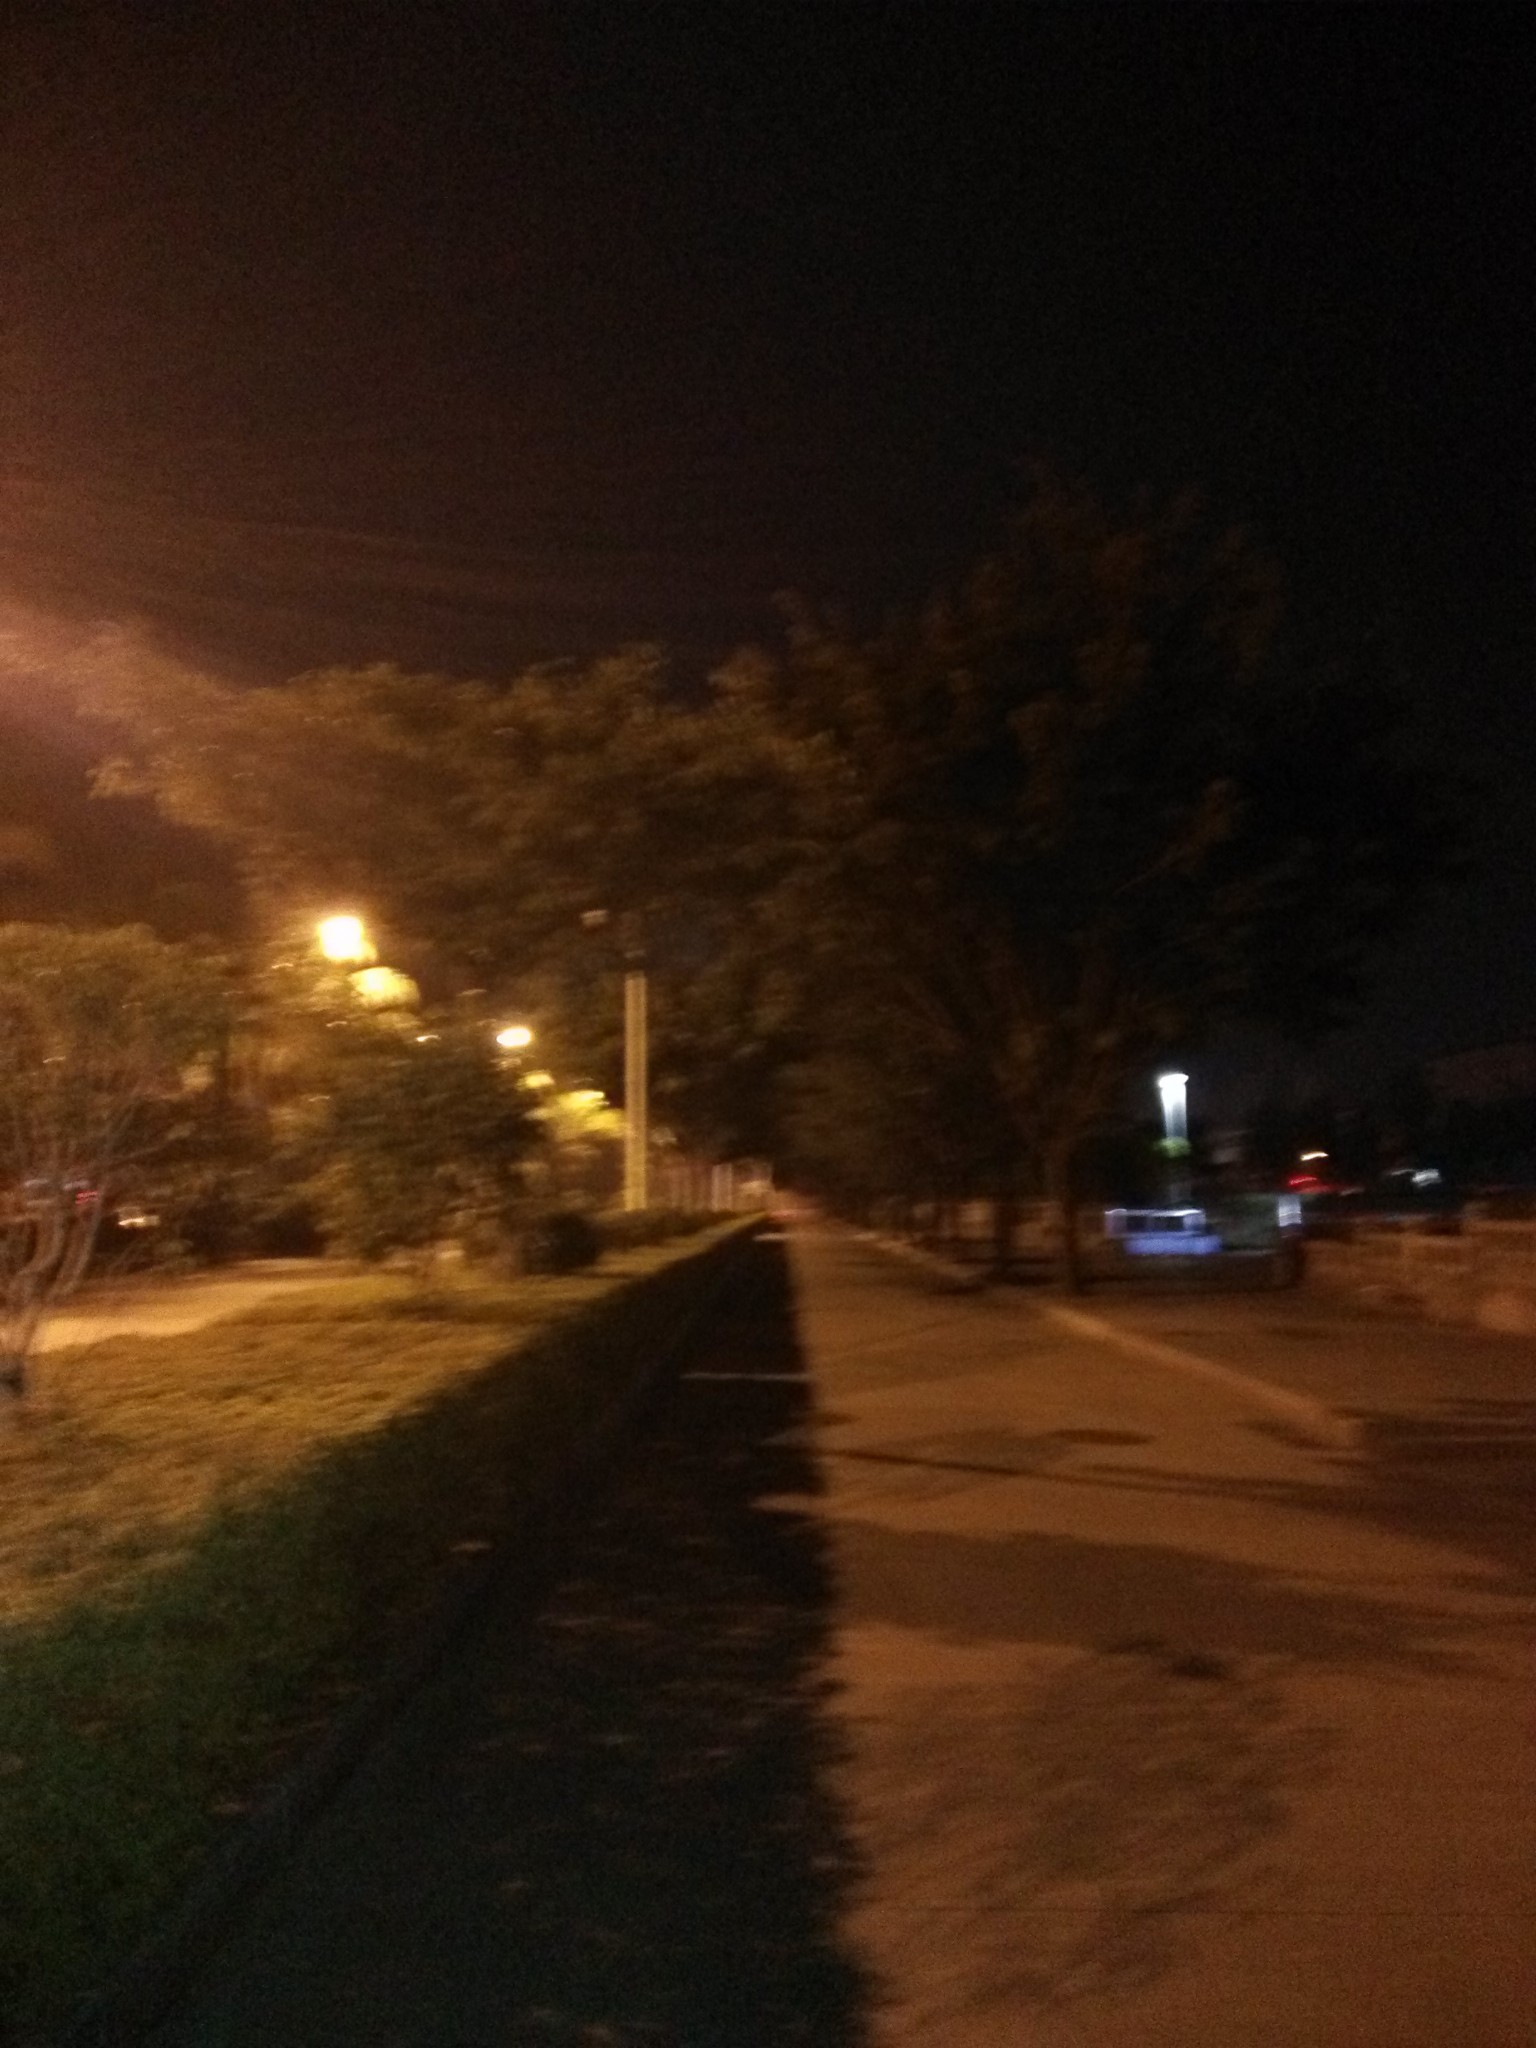 凌晨5点38分,走在清冷的街道上,没有觉得因为一个人而觉得孤独